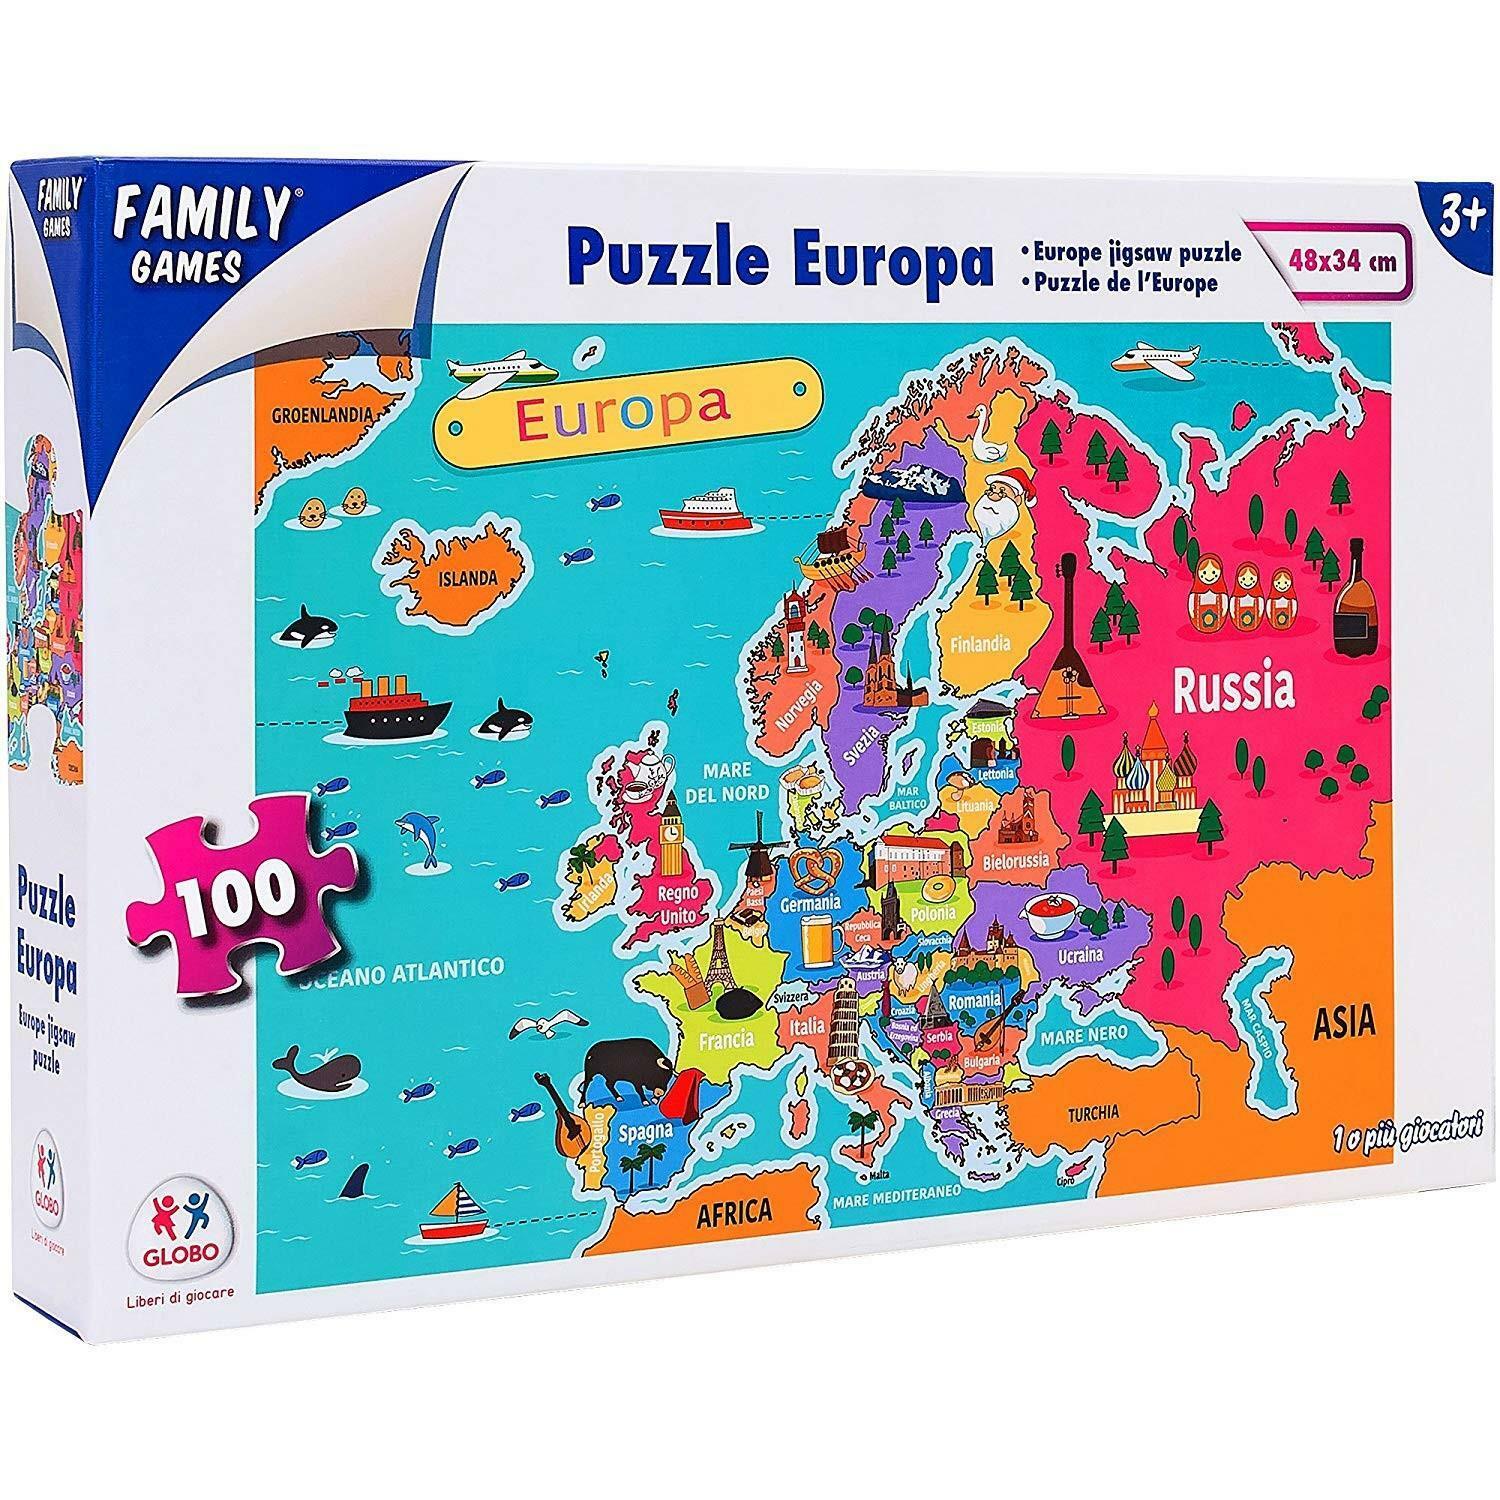 globo globo family games - puzzle europa 100 pz